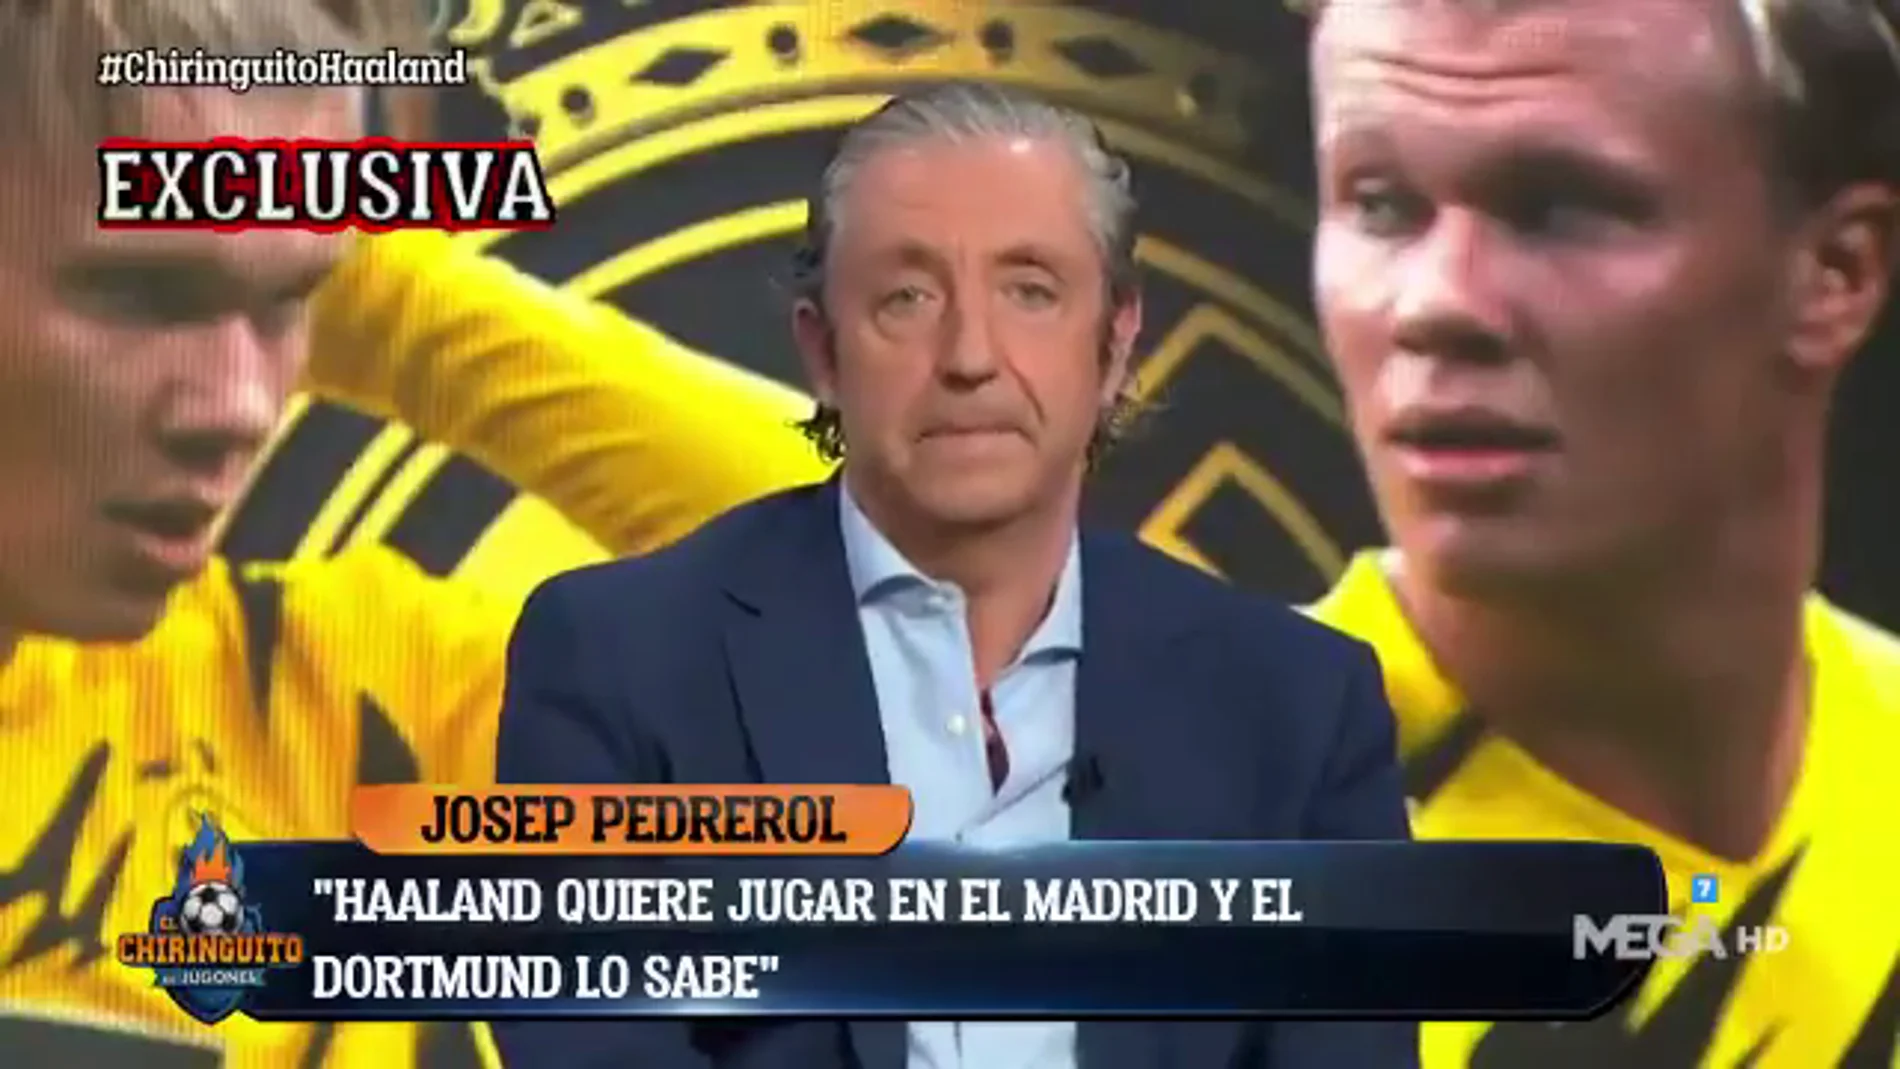 Exclusiva de Pedrerol: "Halaand quiere marcharse al Real Madrid en Junio"